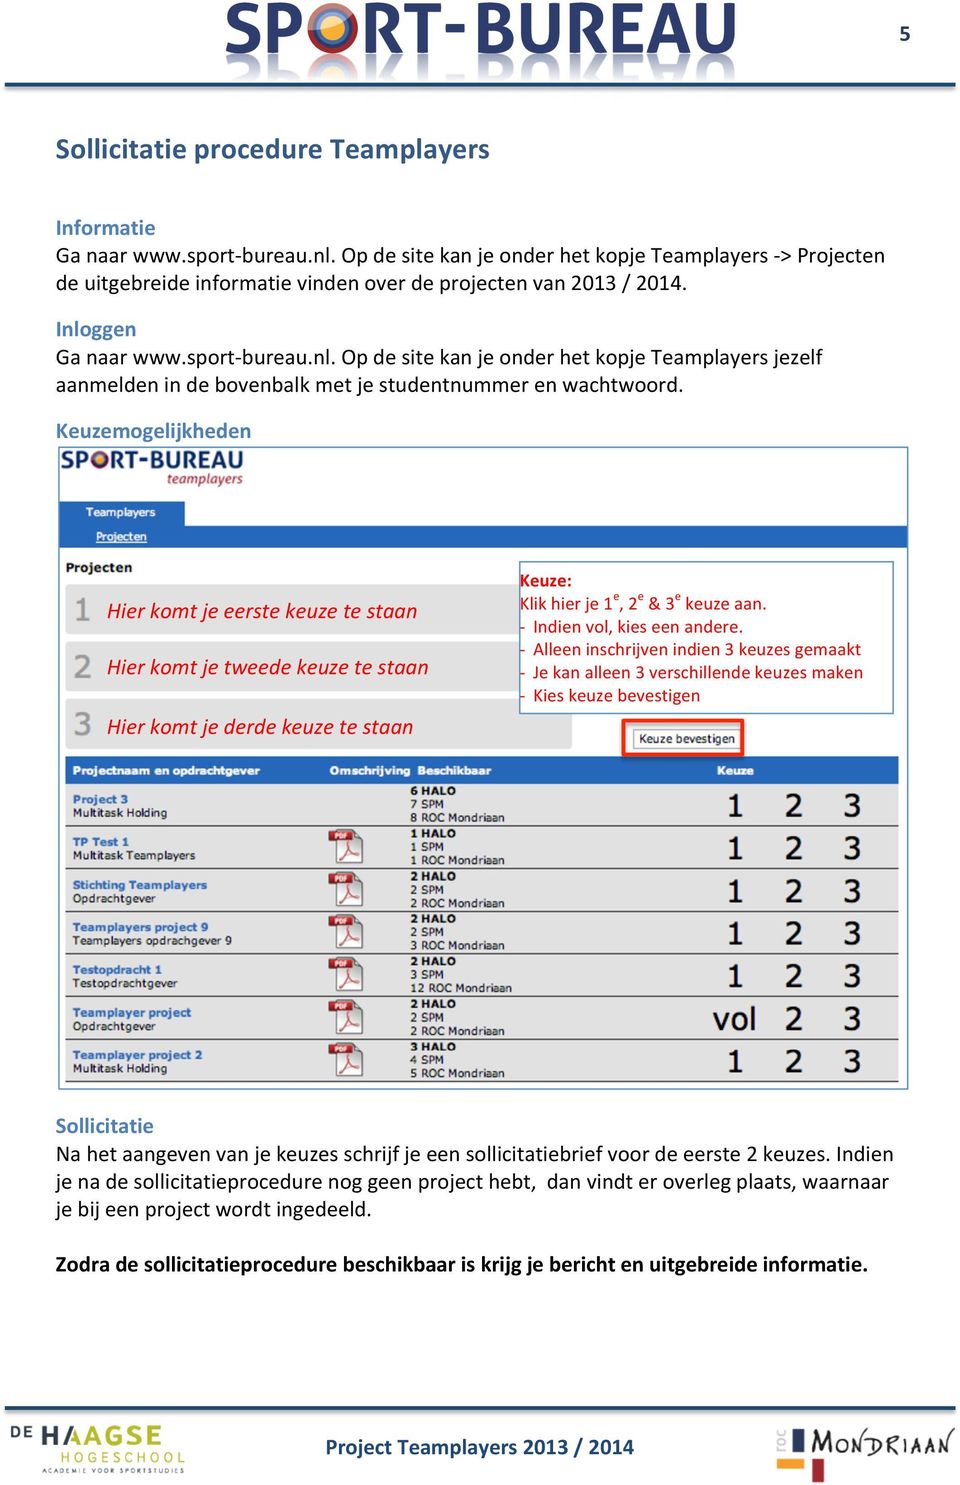 ggen Ga naar www.sport- bureau.nl. Op de site kan je onder het kopje Teamplayers jezelf aanmelden in de bovenbalk met je studentnummer en wachtwoord.